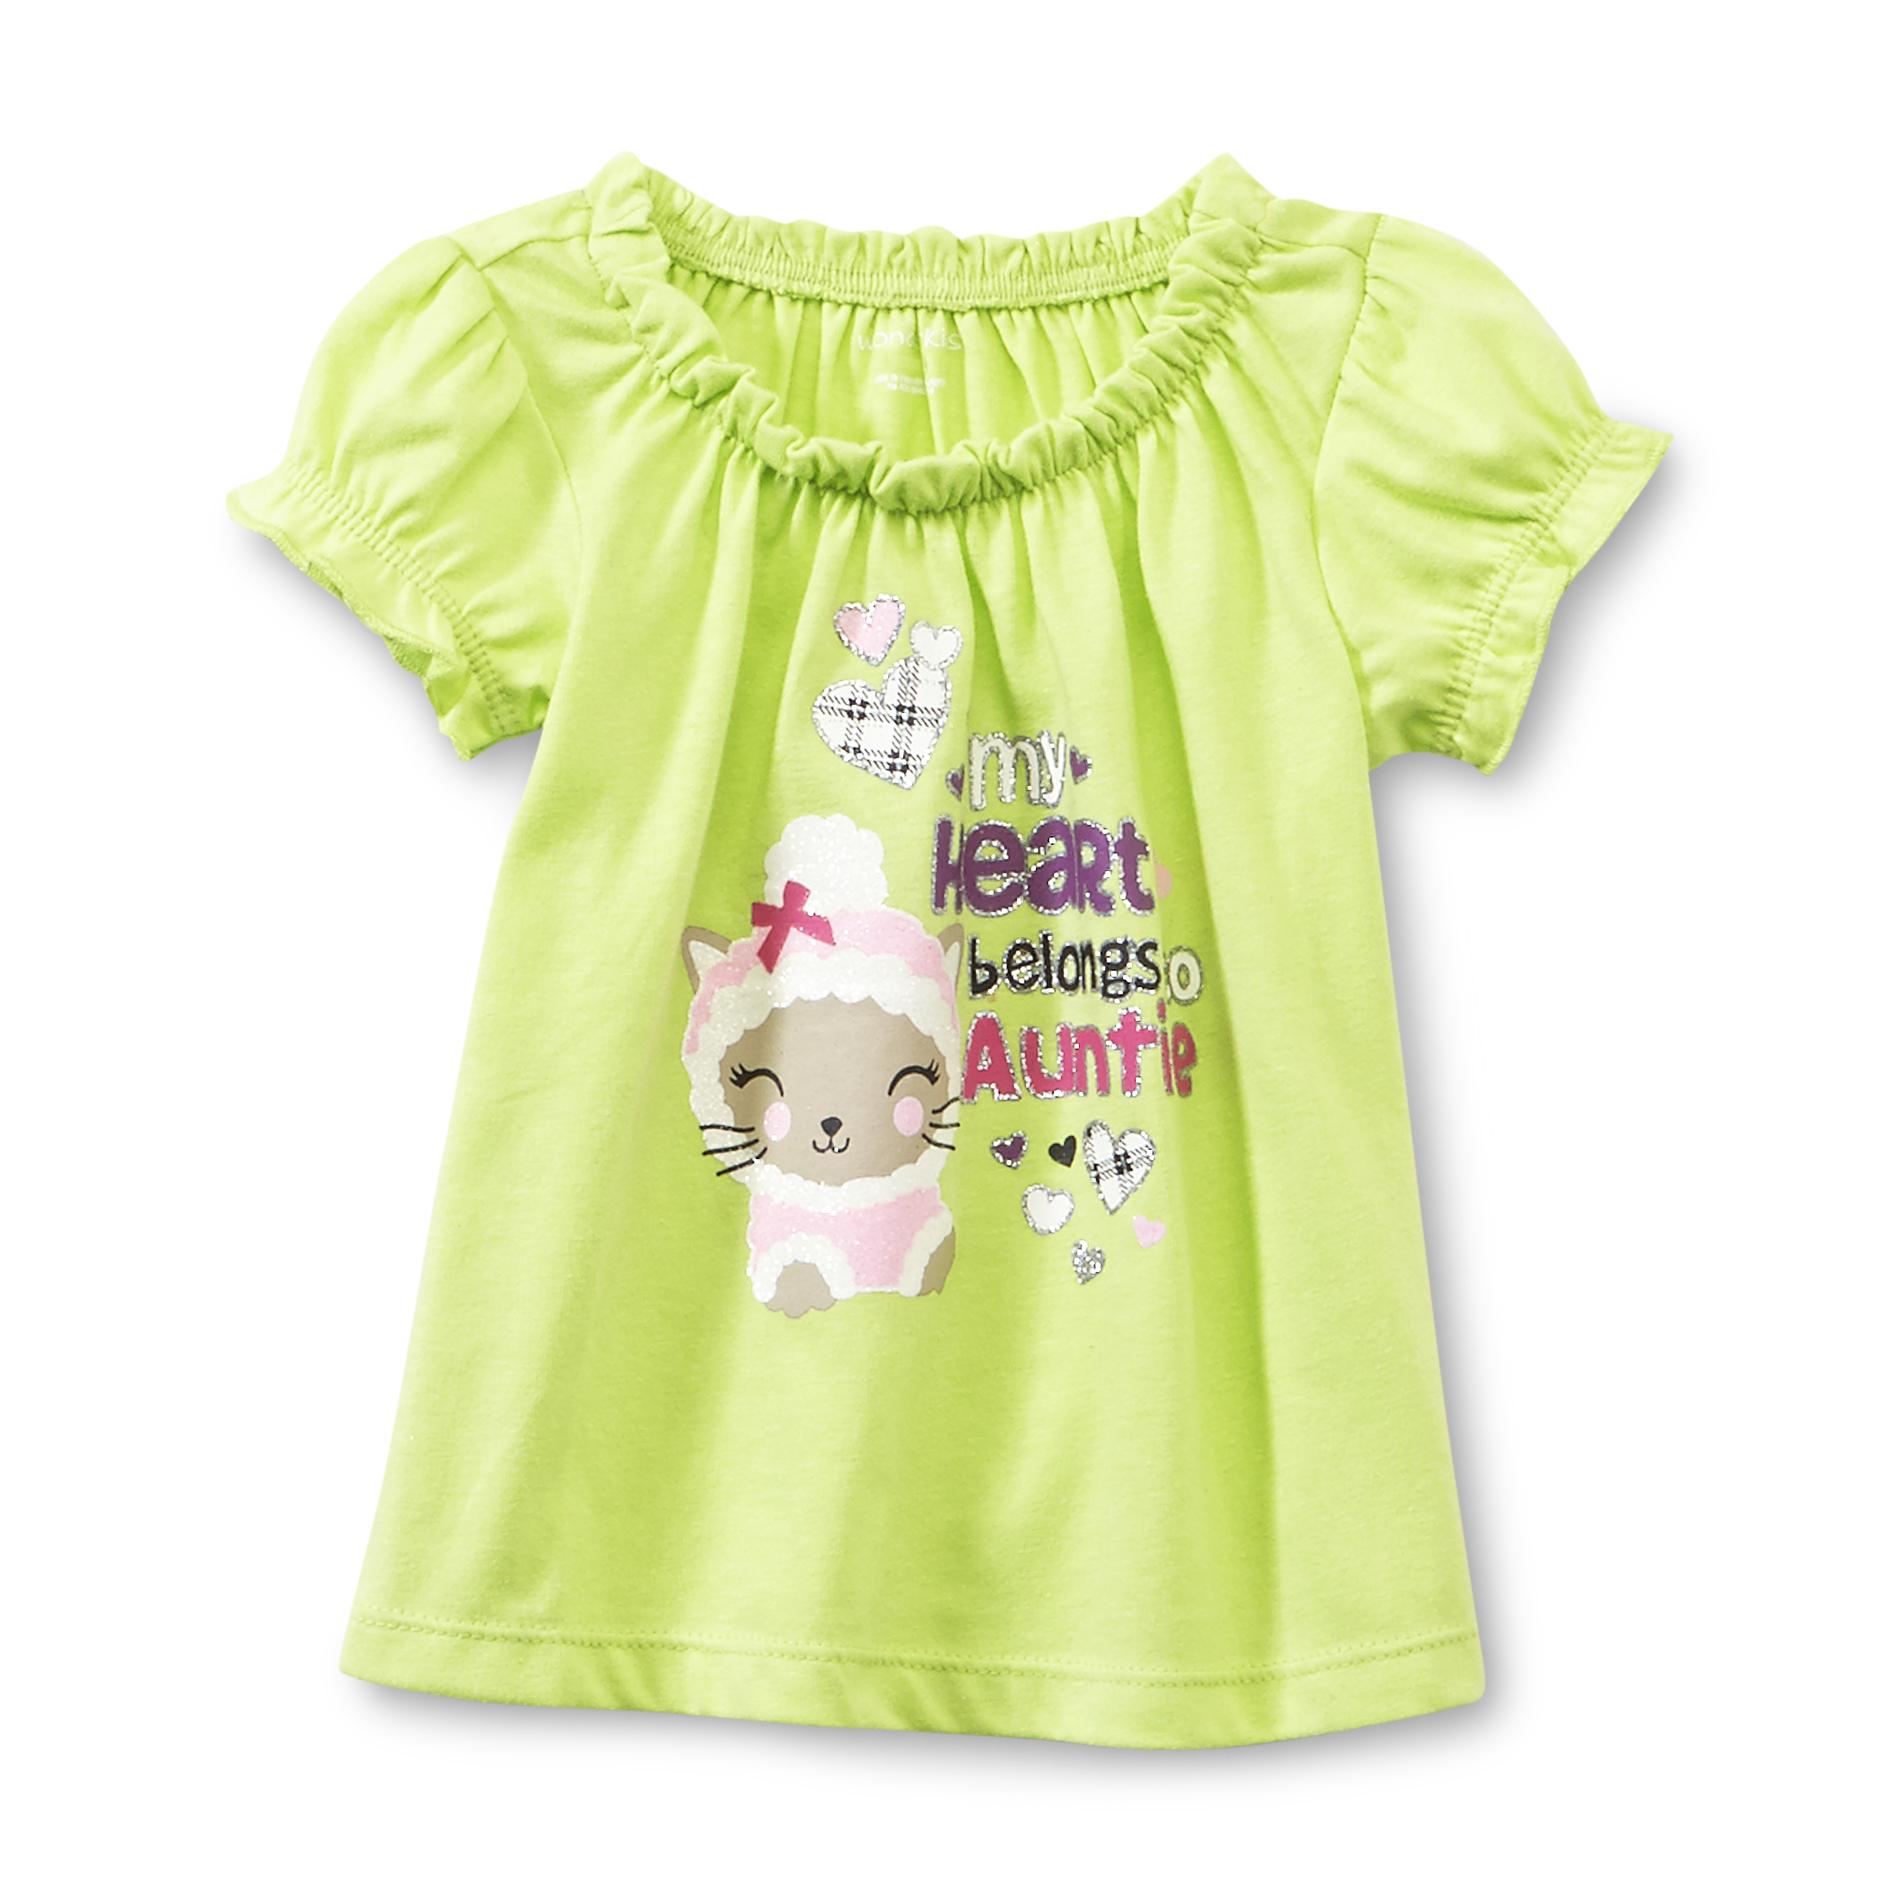 WonderKids Infant & Toddler Girl's Short-Sleeve Top - Cat